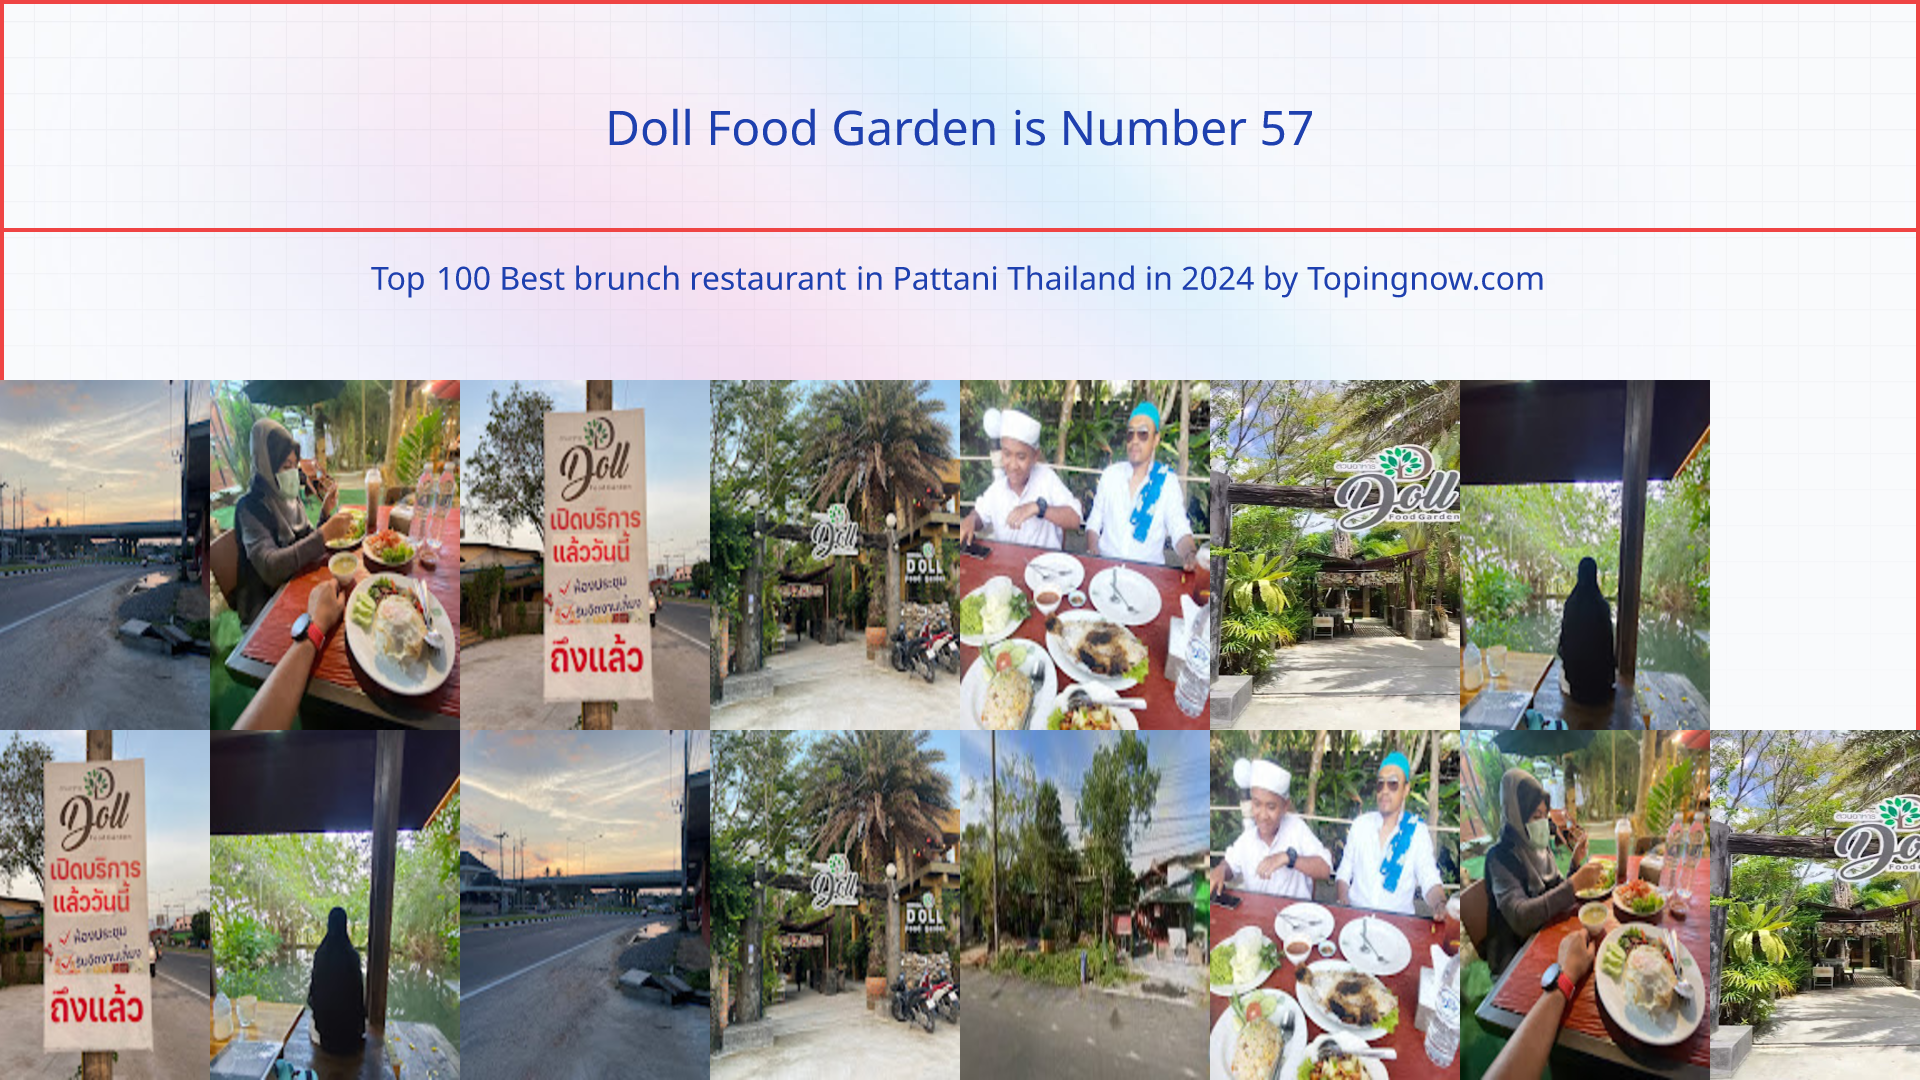 Doll Food Garden: Top 100 Best brunch restaurant in Pattani Thailand in 2024